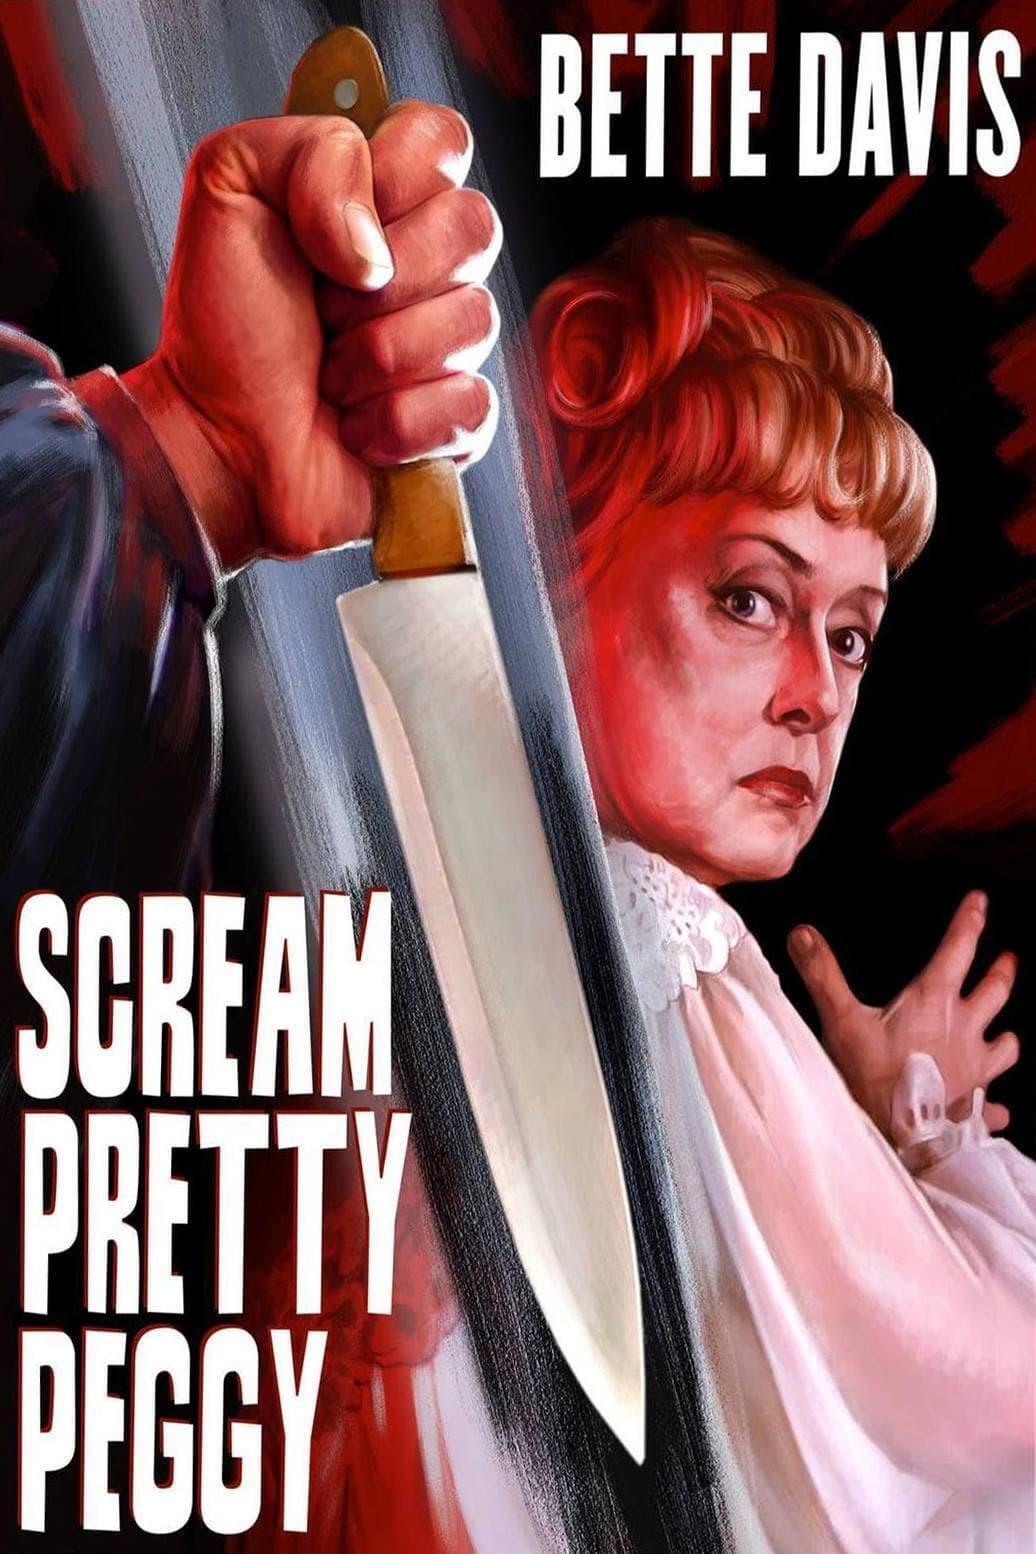 Scream, Pretty Peggy poster